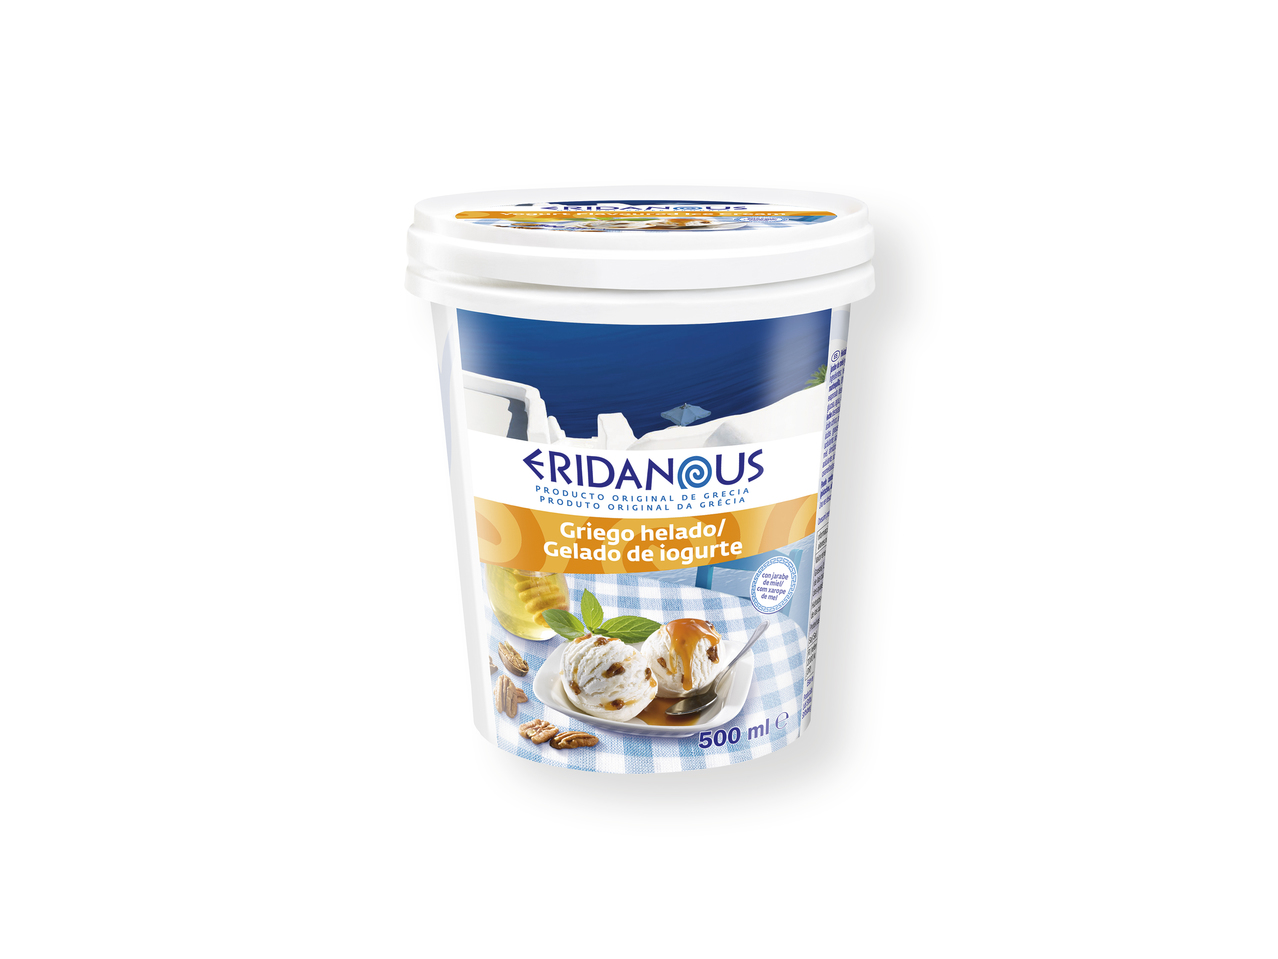 "Eridanous" Yogur helado de miel y nueces pecanas